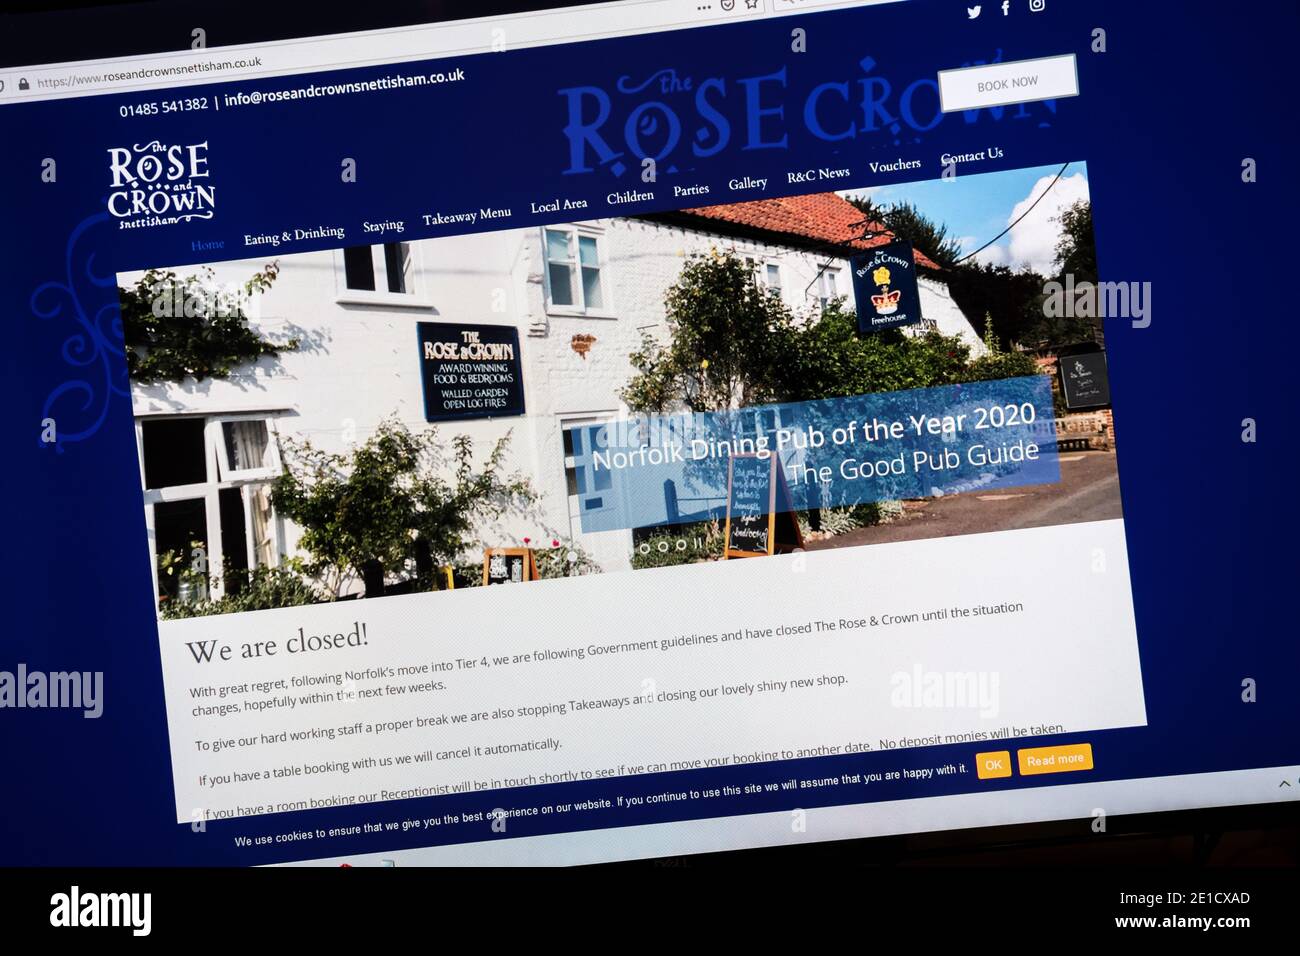 El sitio web de Rose & Crown pub en Snettisham muestra el mensaje de que se cierra temporalmente después de que Norfolk se mueva a las restricciones de coronavirus de nivel 4. Foto de stock